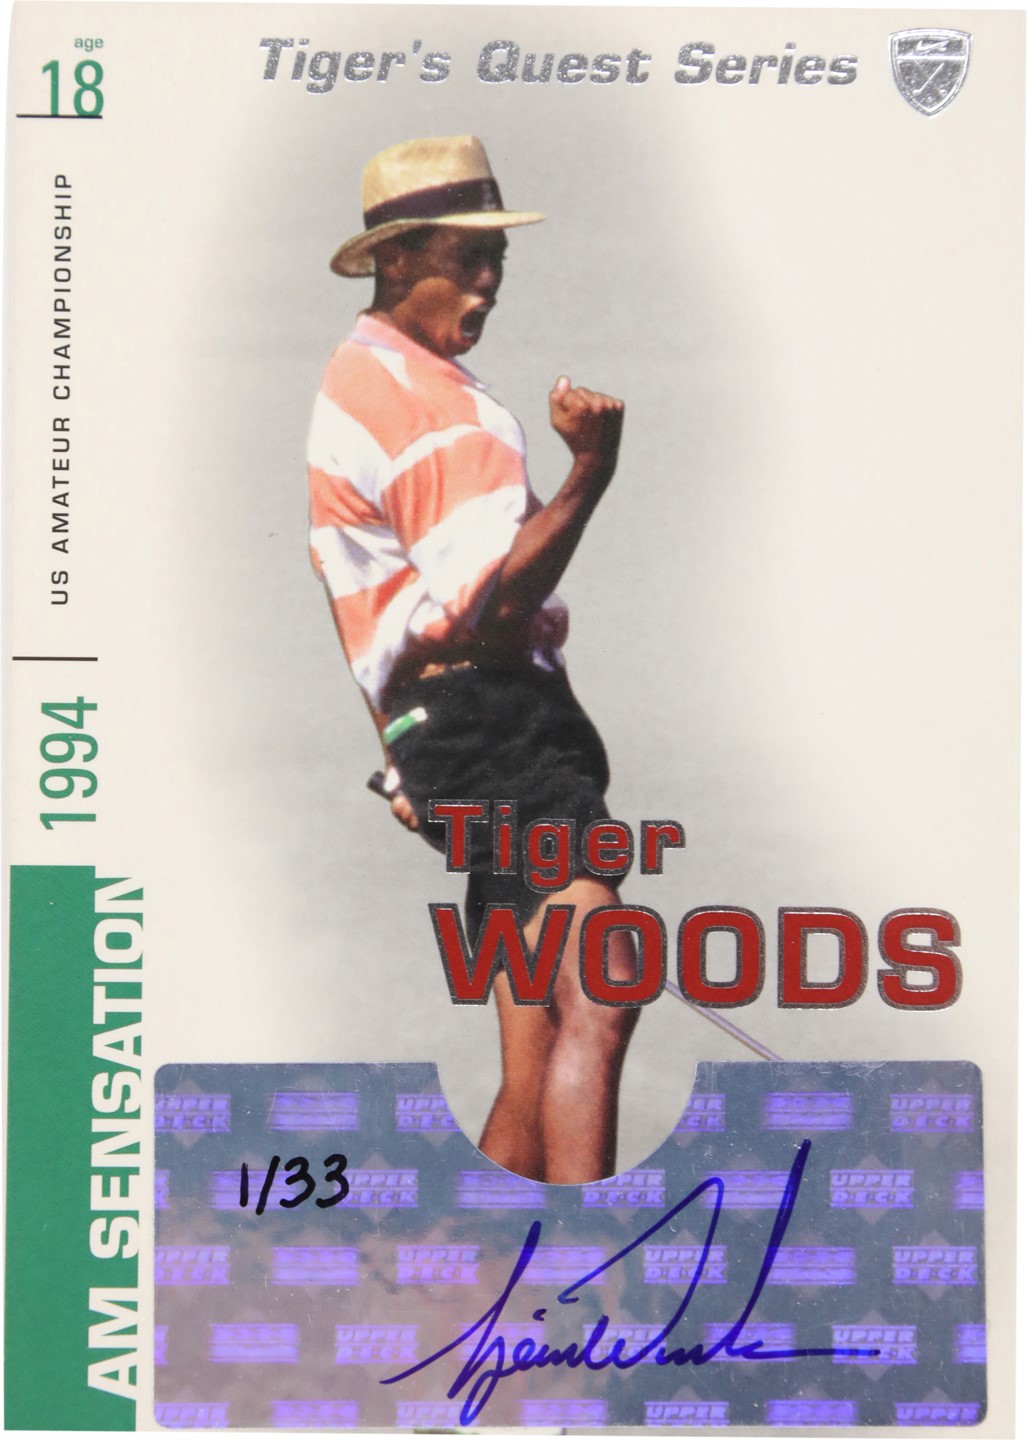 - 2002 Upper Deck "Tigers Quest" Series Sensation Tiger Woods Autograph #1/33 and Bobblehead